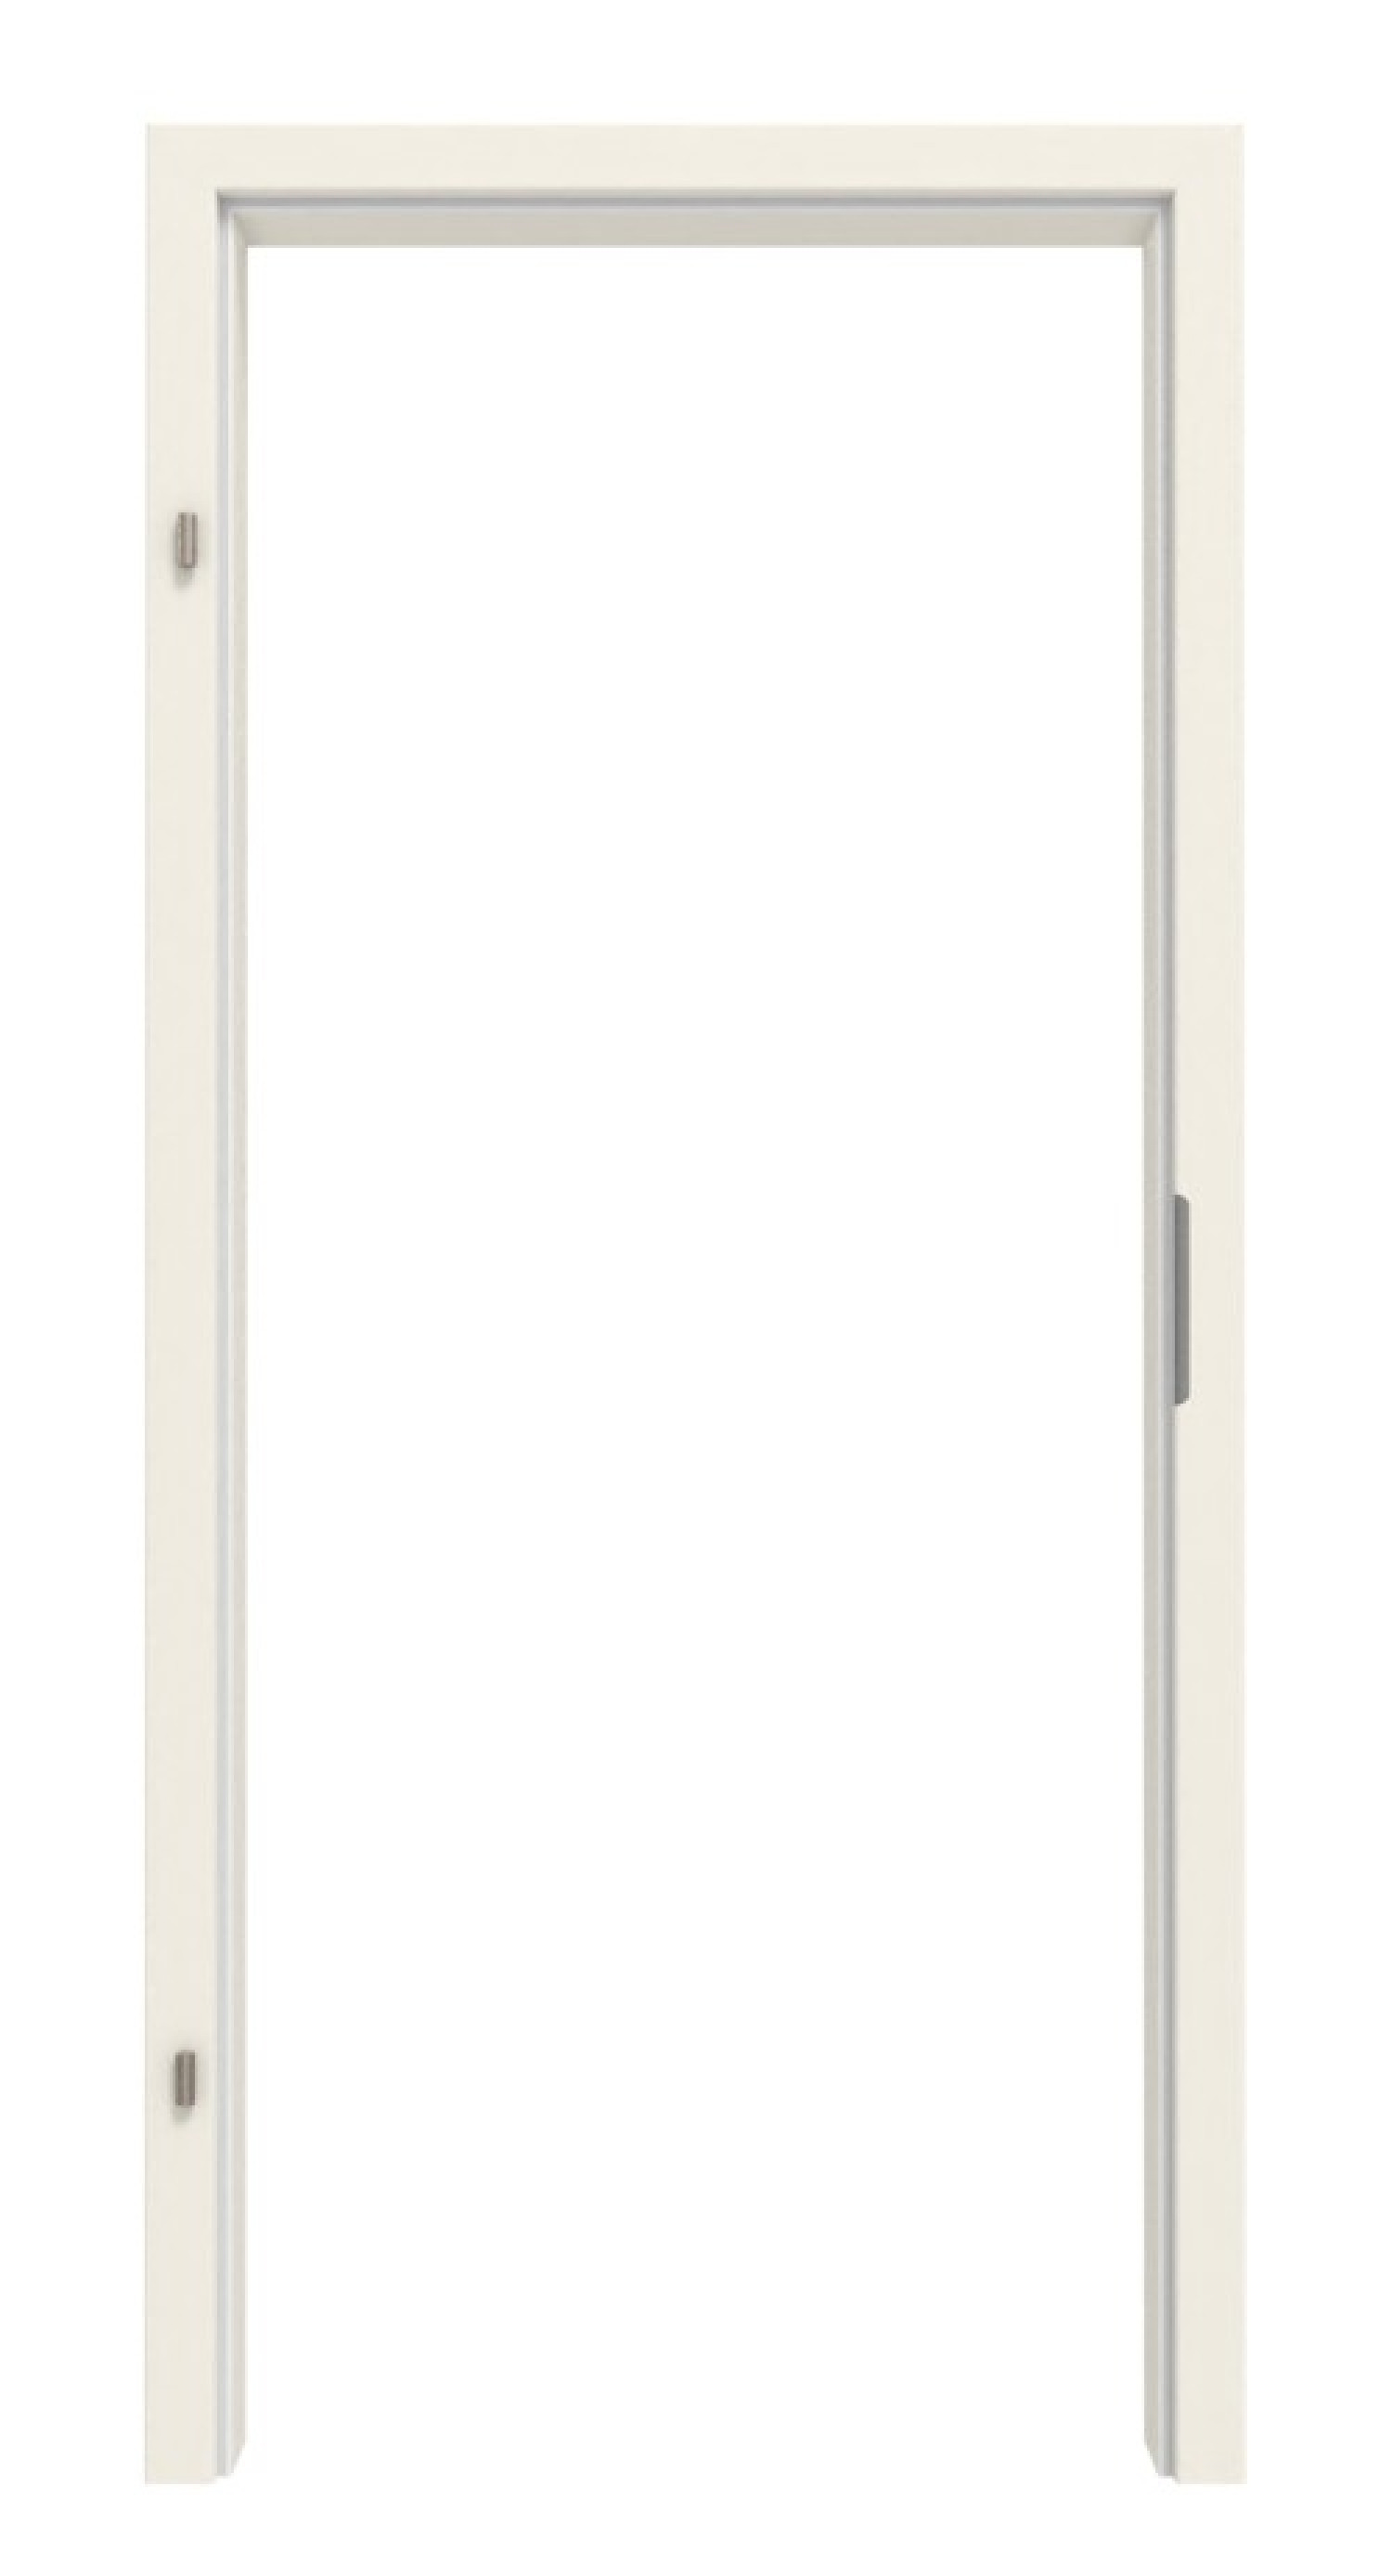 Frontansicht von LEBO Zarge für Schallschutztüren Weiß 9010 Lebolit-CPL mit runder Kante